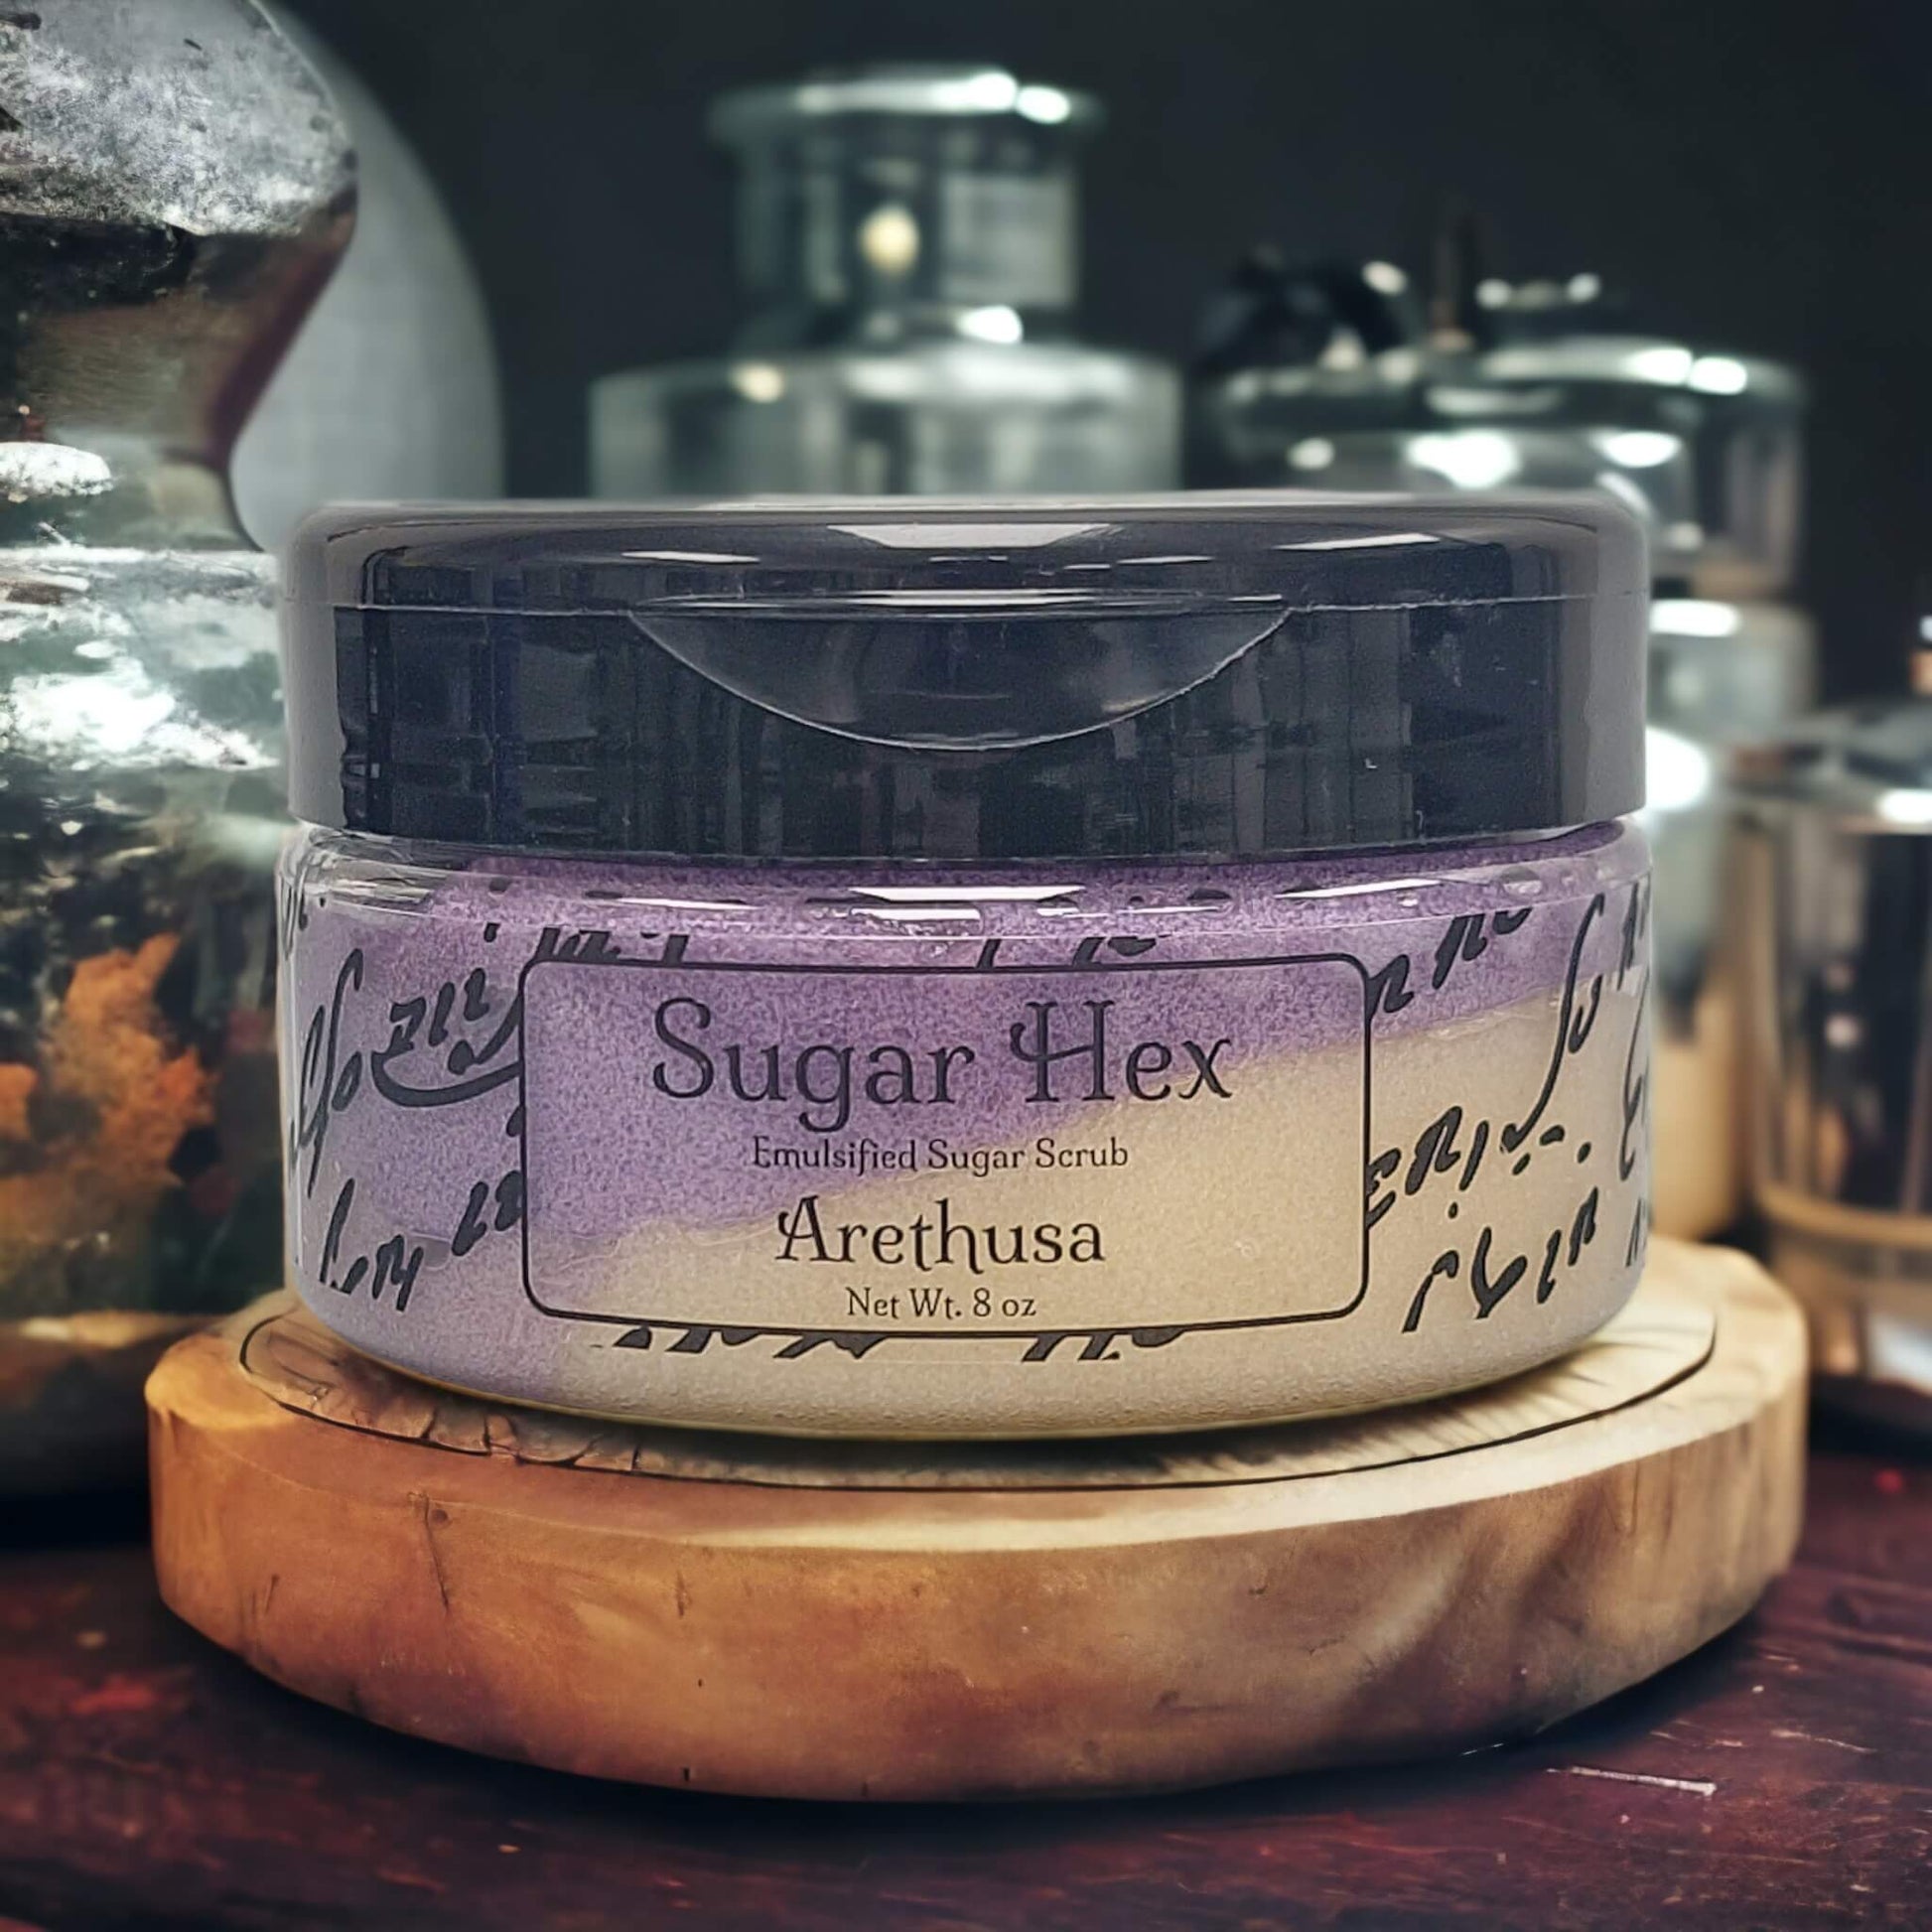 our sugar hex sugar scrub in the scent Arethusa.